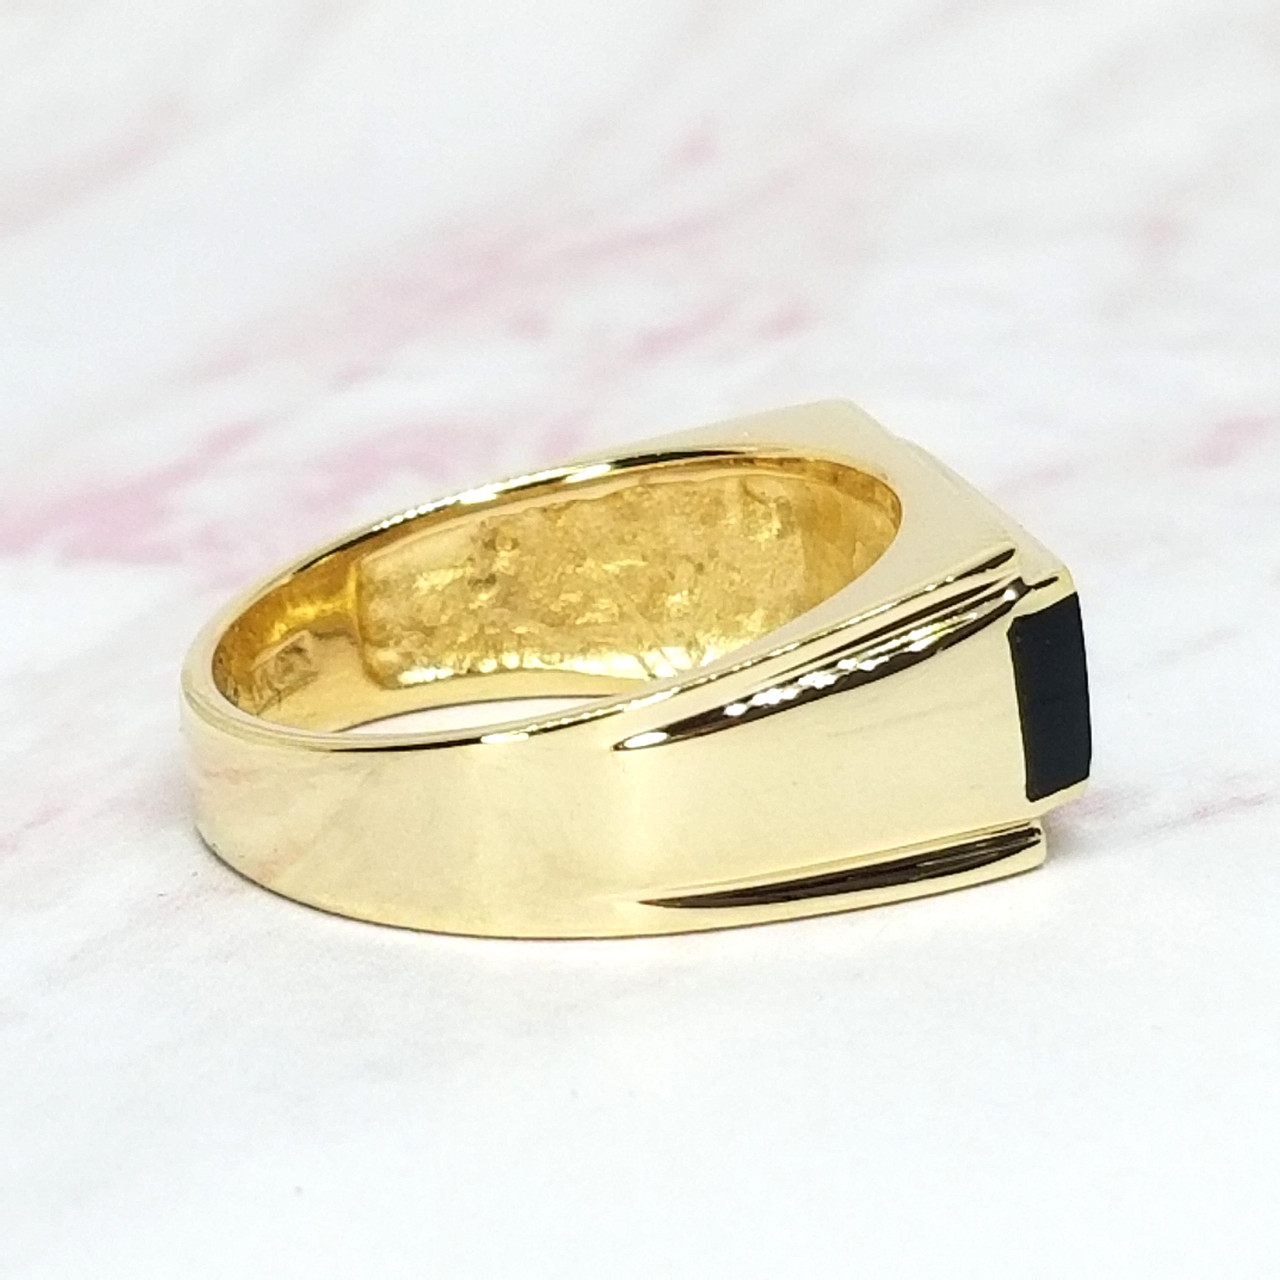 Lennox Onyx Ring, 14k Yellow Gold, Men's Rings